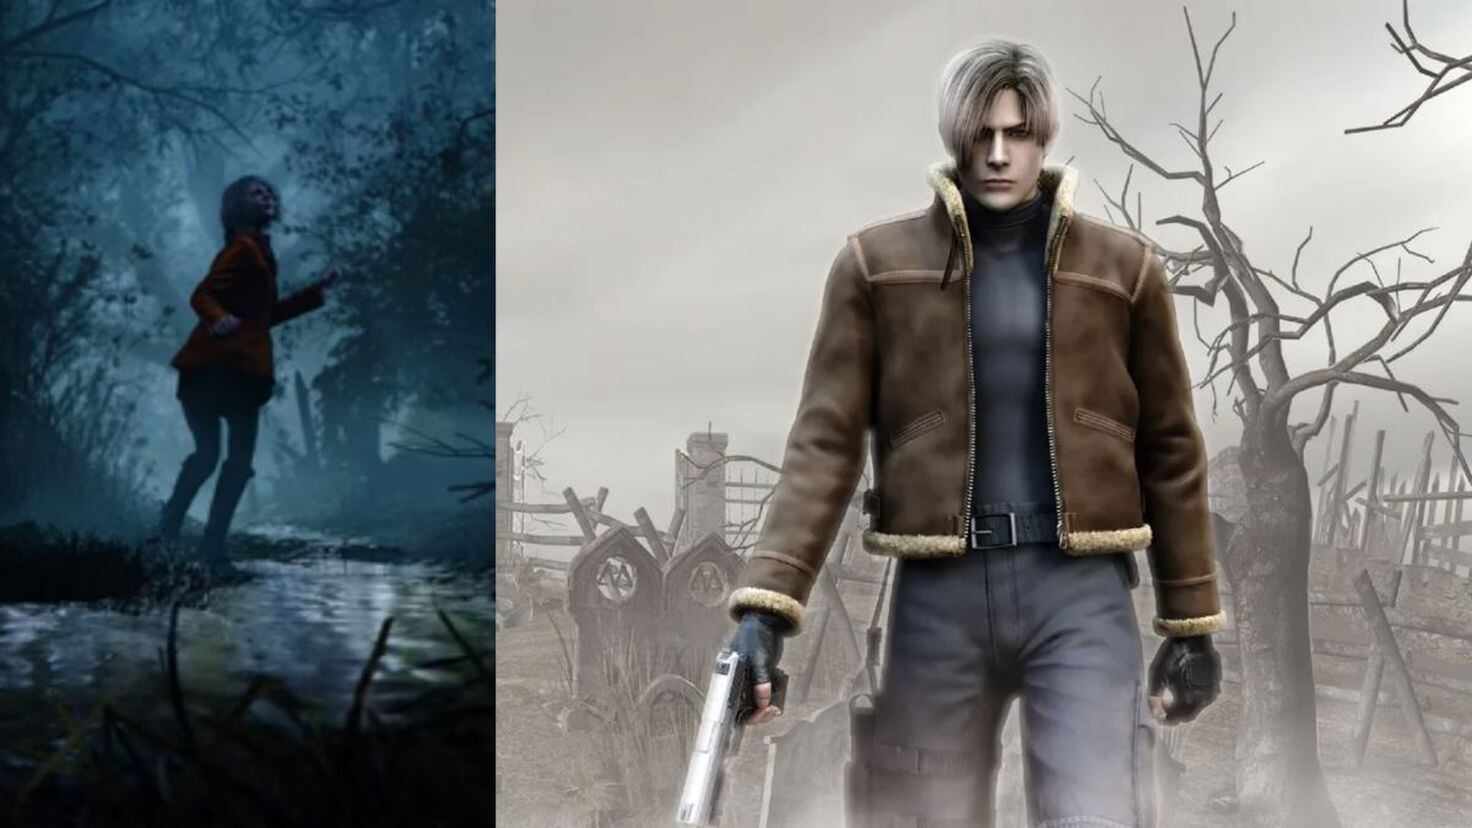 Resident Evil 4 Remake: fecha de lanzamiento, ediciones, precio y tráiler